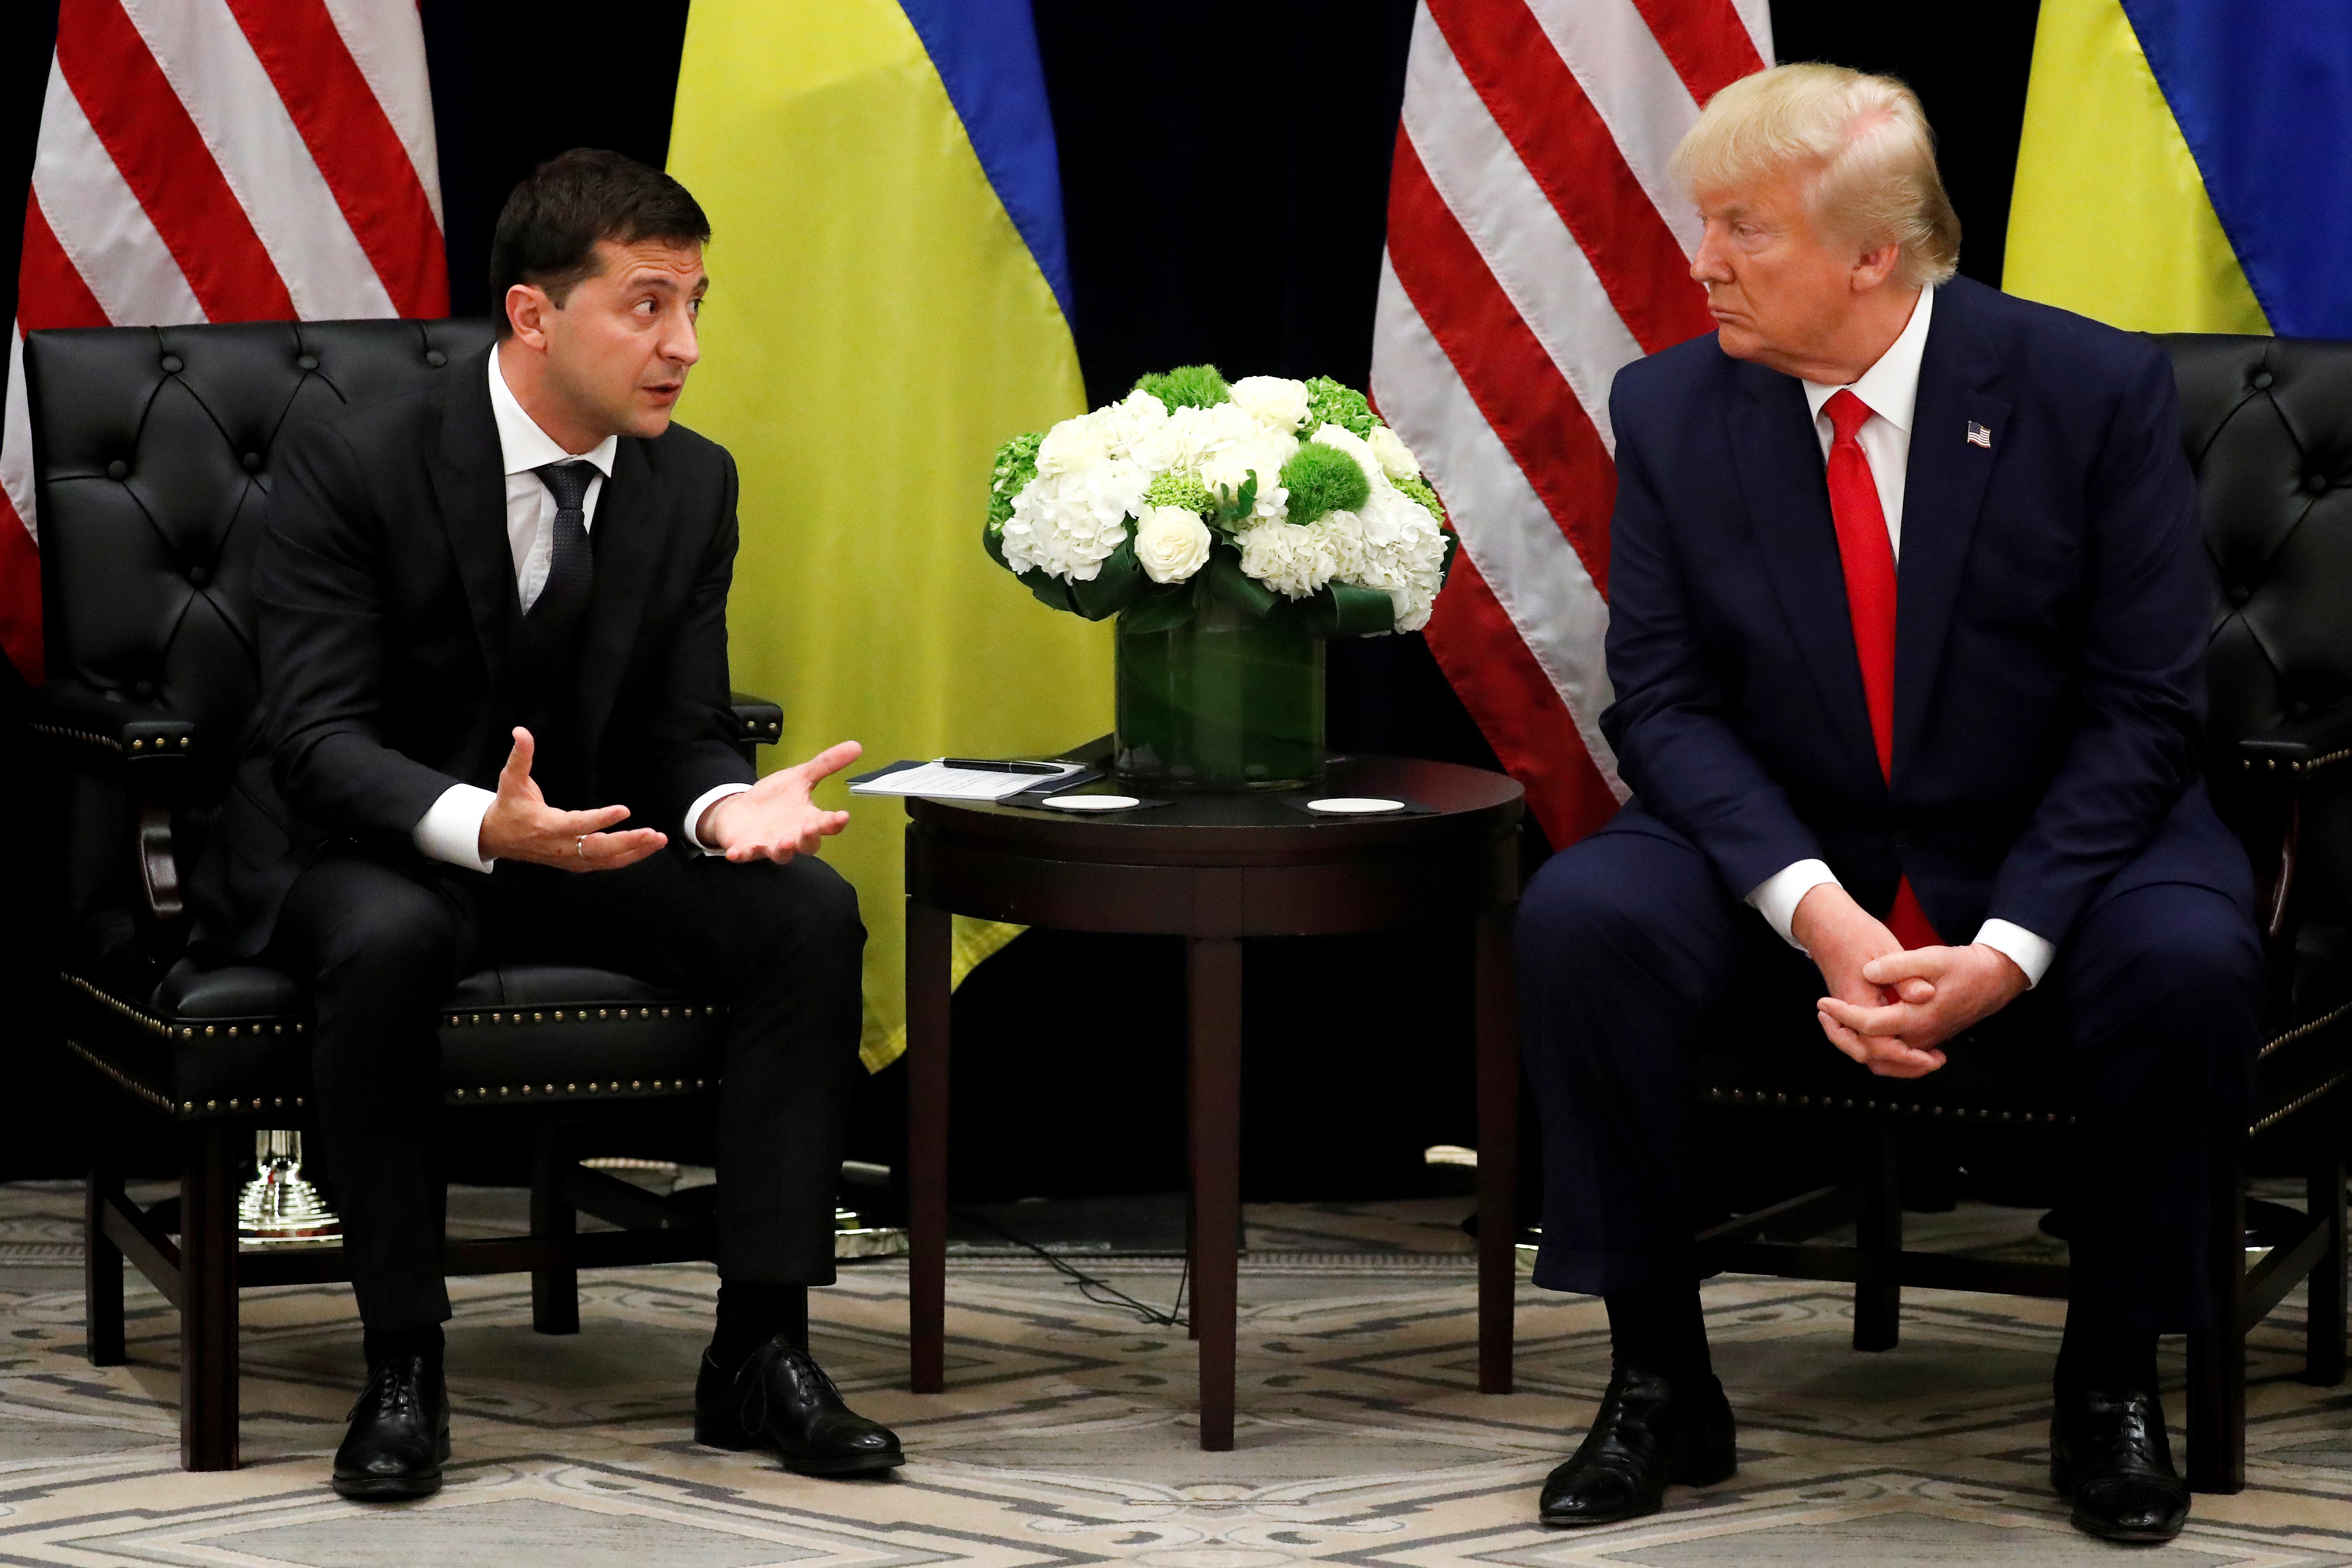 Ρεπουμπλικανοί: Ο Τραμπ είχε απλά έναν… σκεπτικισμό για την Ουκρανία